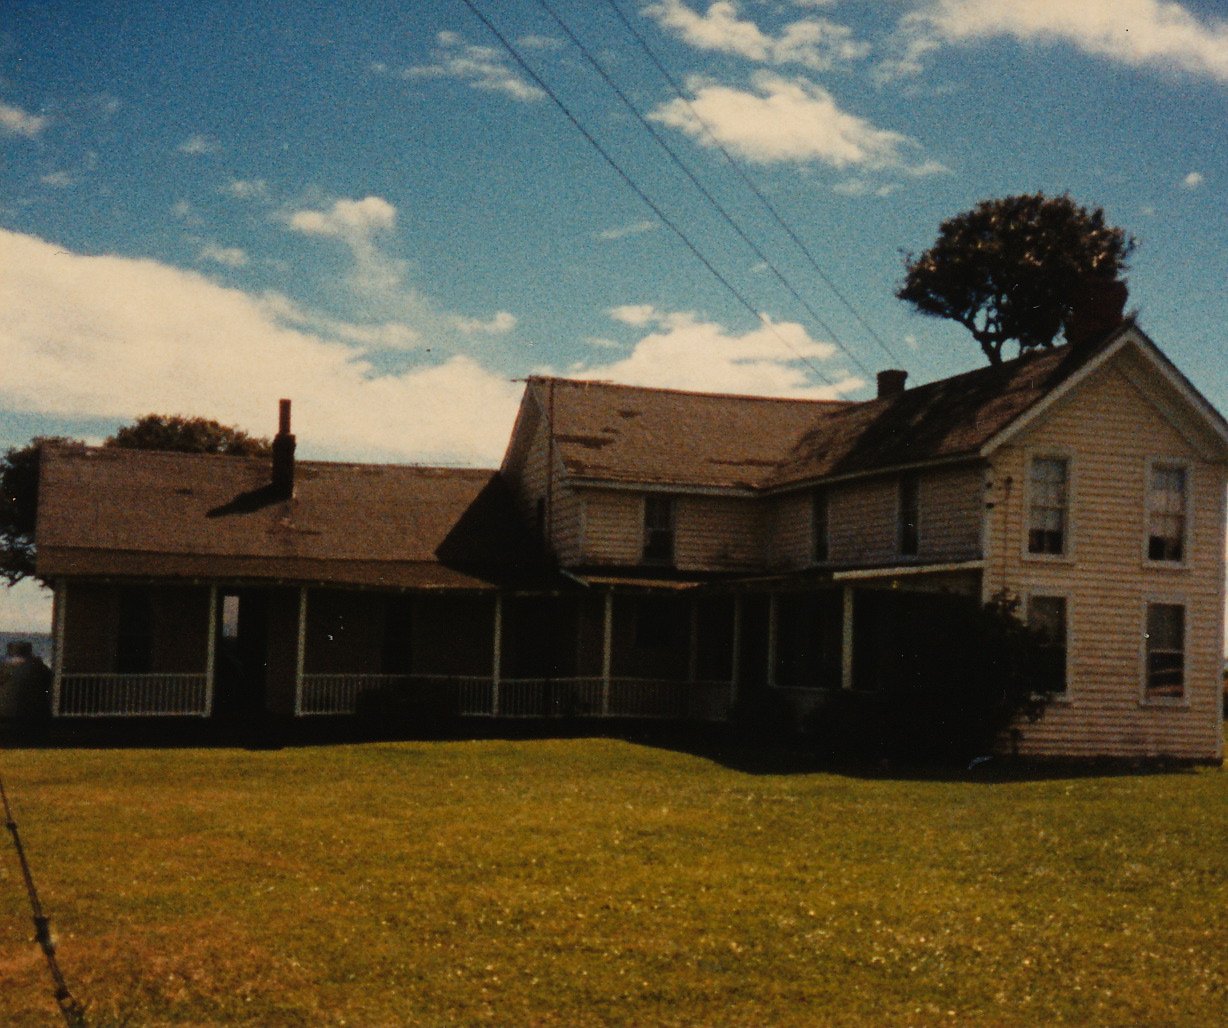 John Lewis House, taken August 1985